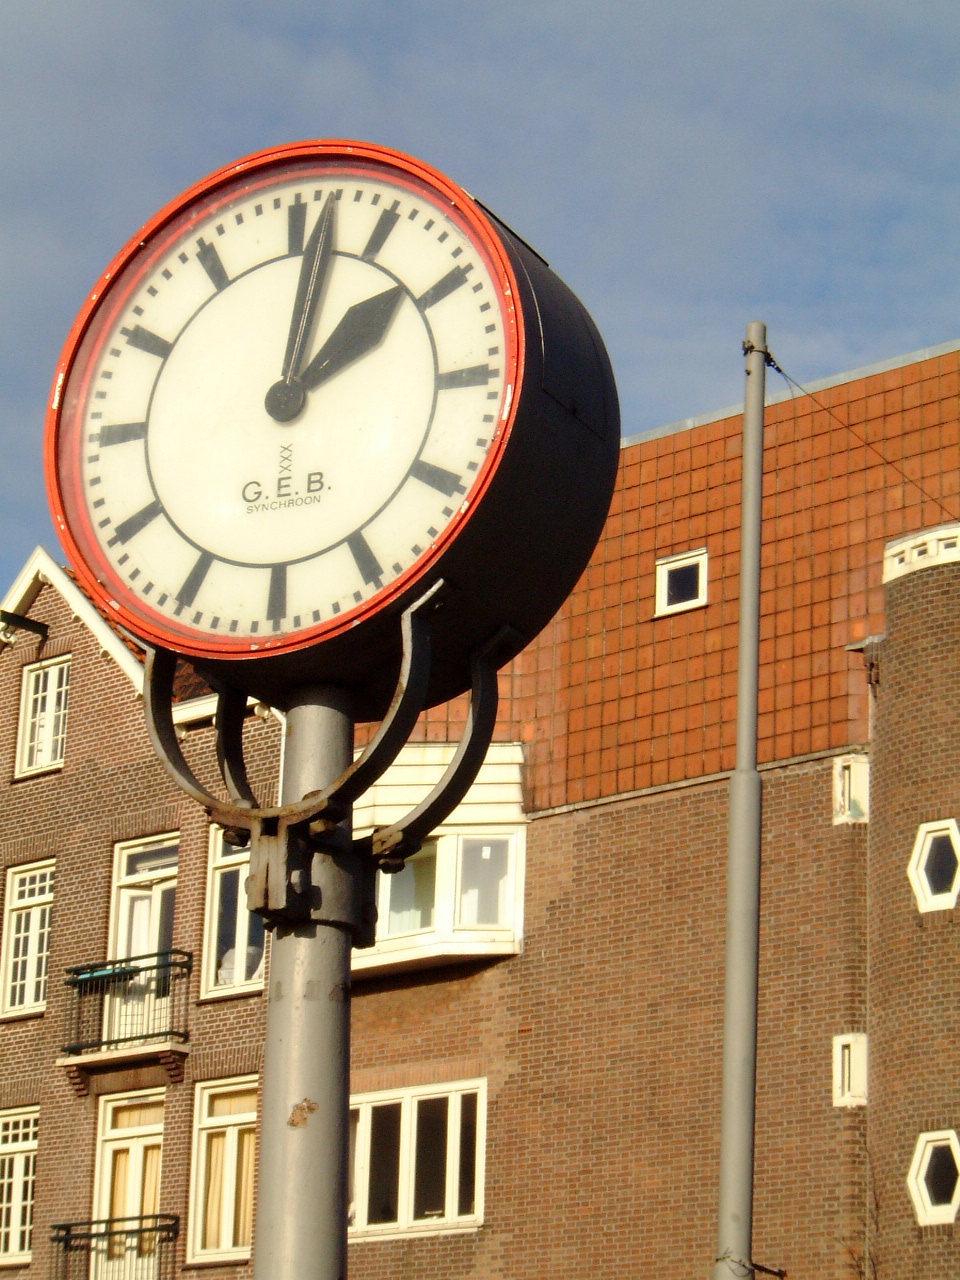 maartent clock timekeeping amsterdam buildings city